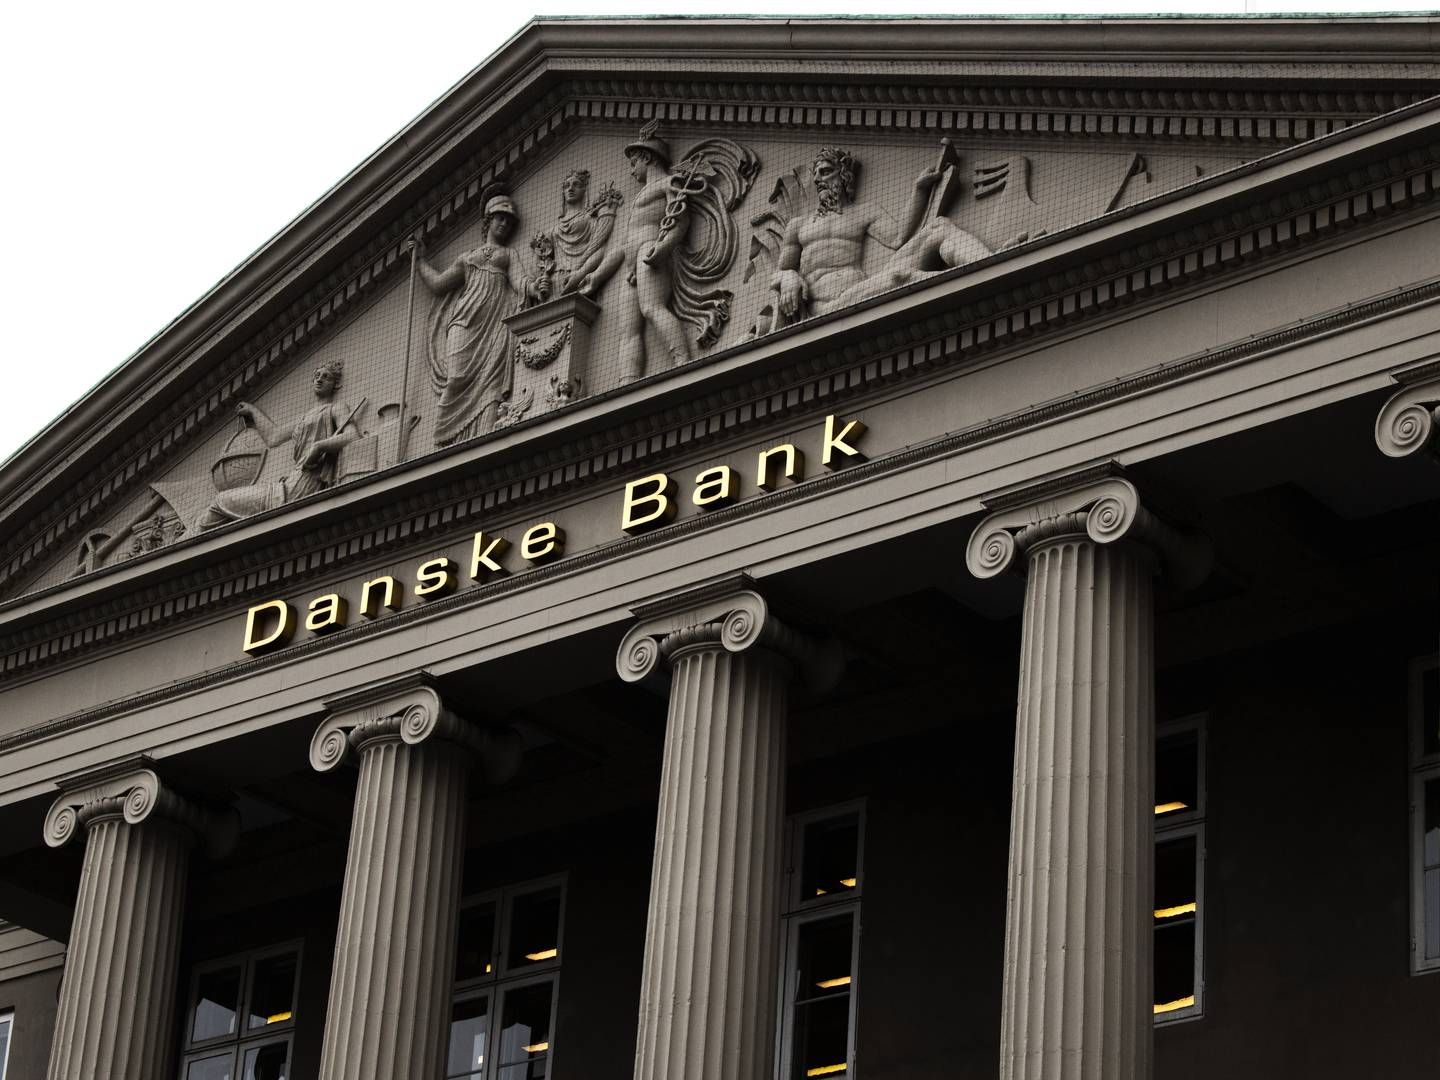 "En rigtig spændende mulighed for at arbejde endnu mere med ansvarlighed i den finansielle sektor," skriver advokaten om sin nye stilling i Danske Bank. | Foto: Jens Hartmann Schmidt